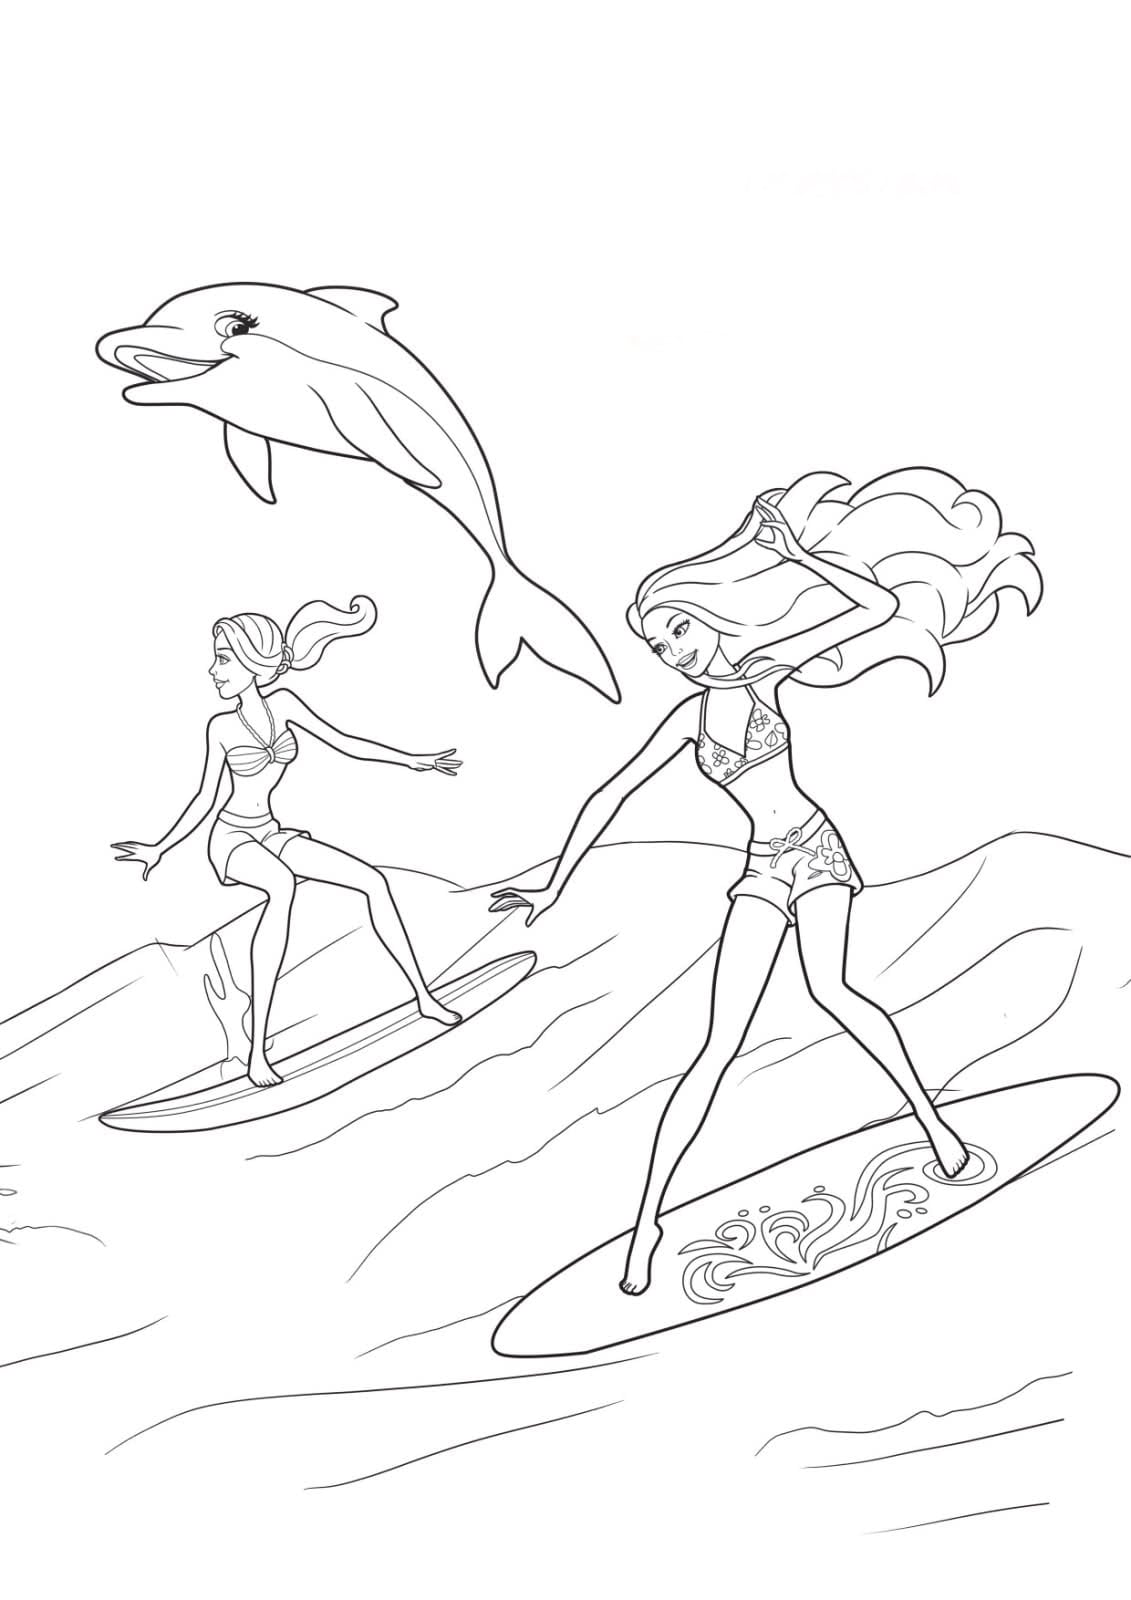 Desenho De Barbie Sereia E Prancha De Surfe Para Colorir